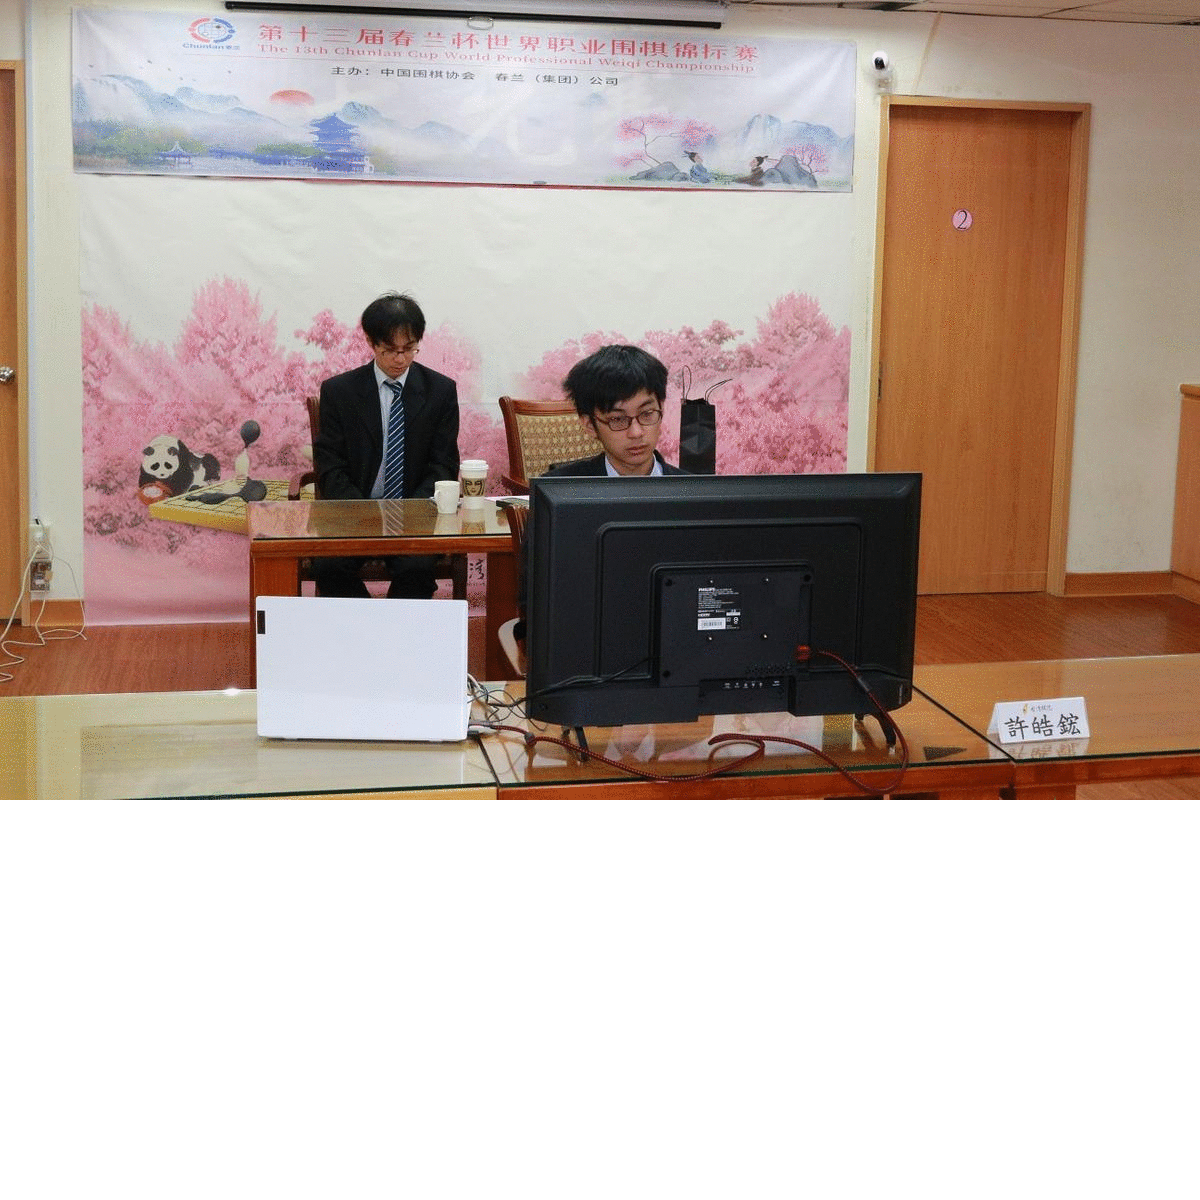 許皓鋐七段晉級第十三屆春蘭杯世界職業圍棋錦標賽八強賽